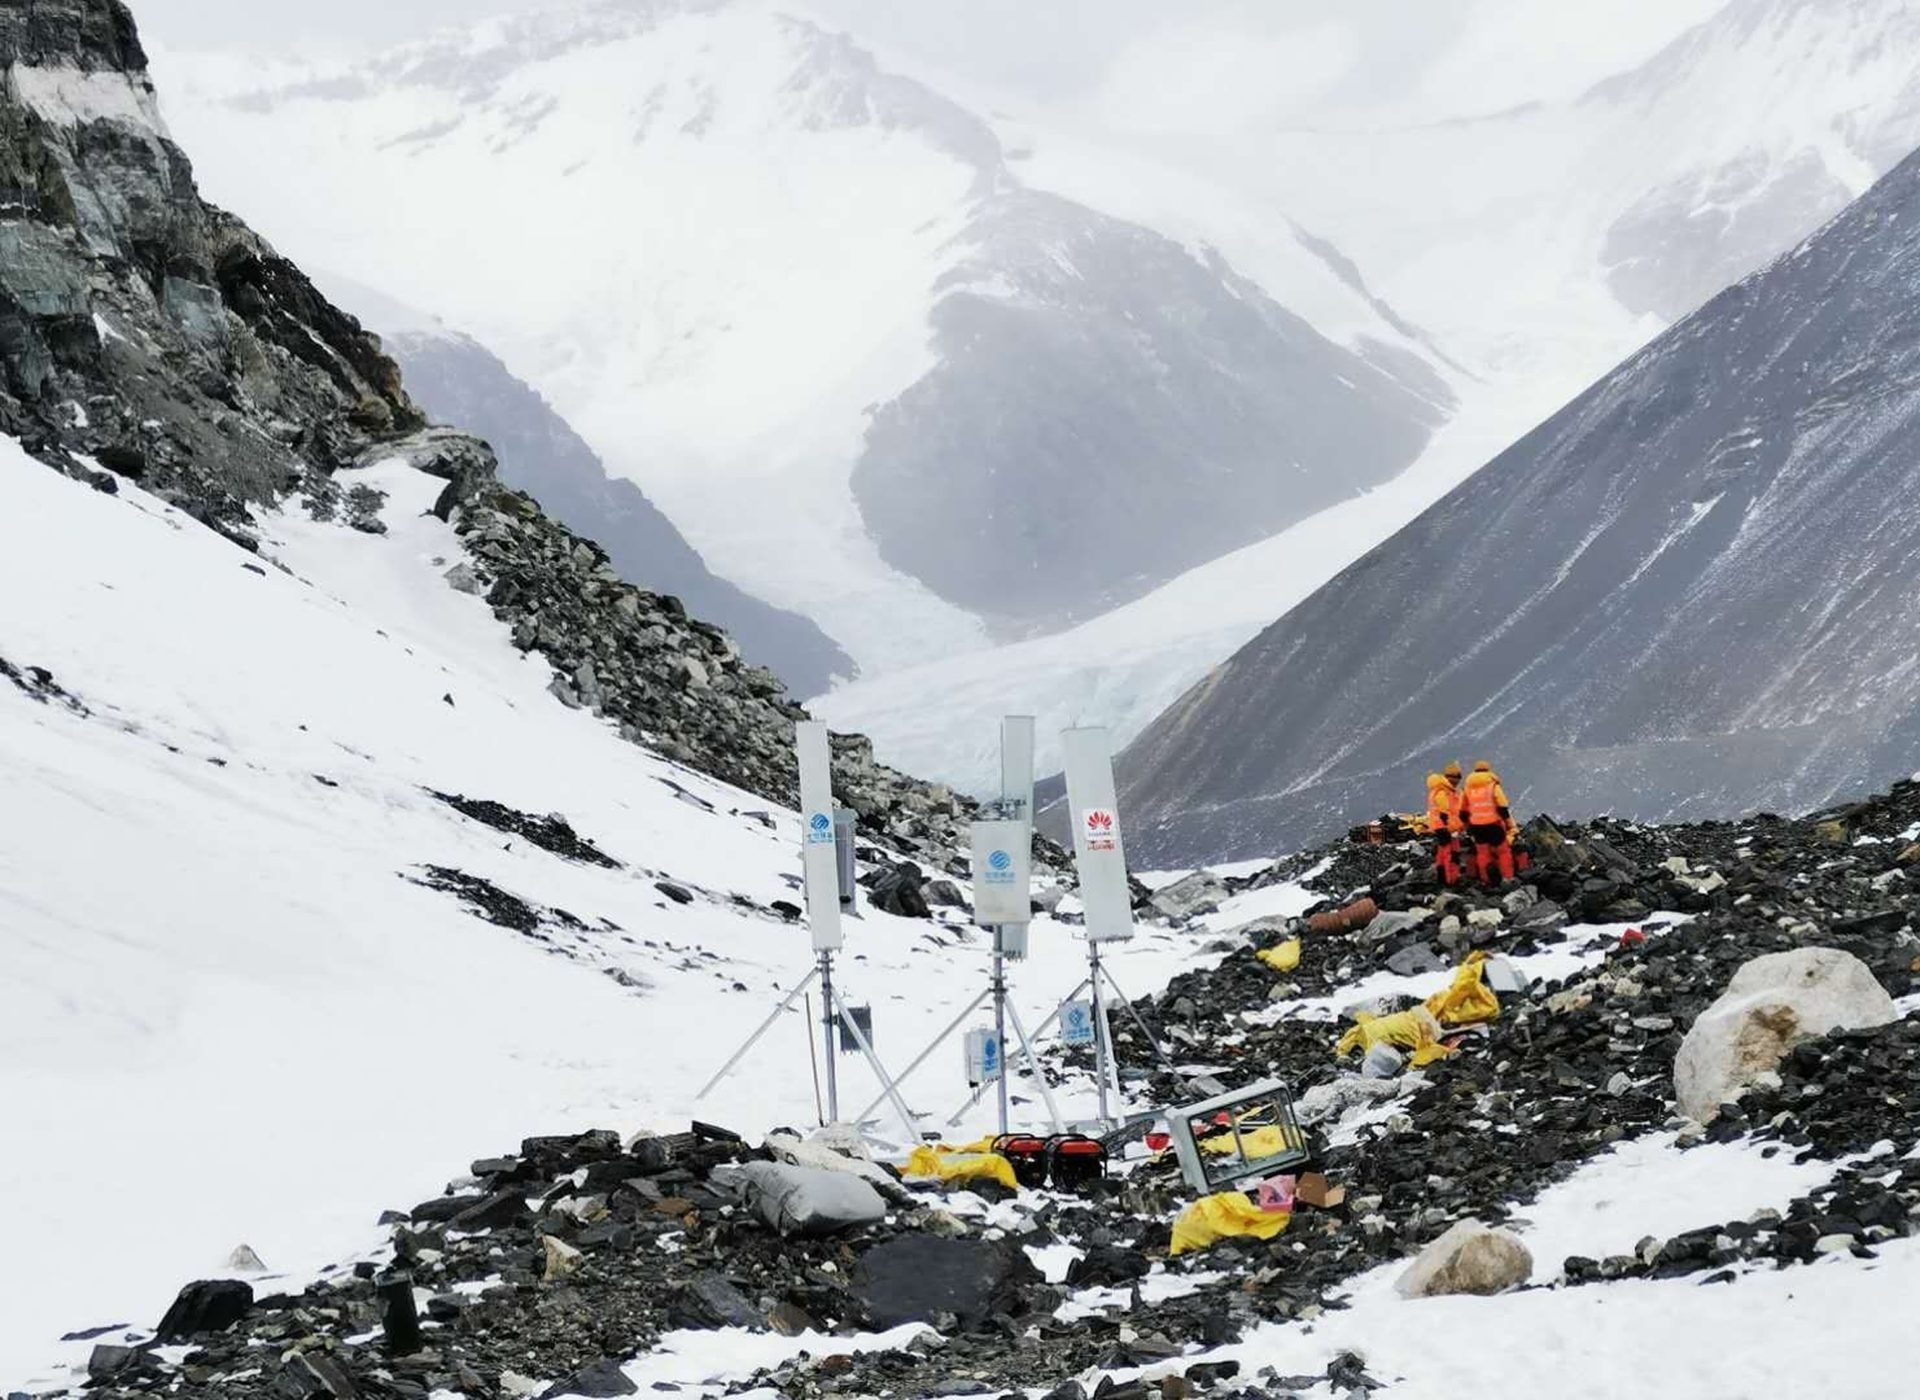 ไชน่า โมบายล์ และ หัวเว่ย ส่งมอบประสบการณ์ 5G ที่สูงที่สุดในโลก ณ ยอดเขาเอเวอเรสต์ พร้อมเผยศักยภาพในการส่งมอบเครือข่าย